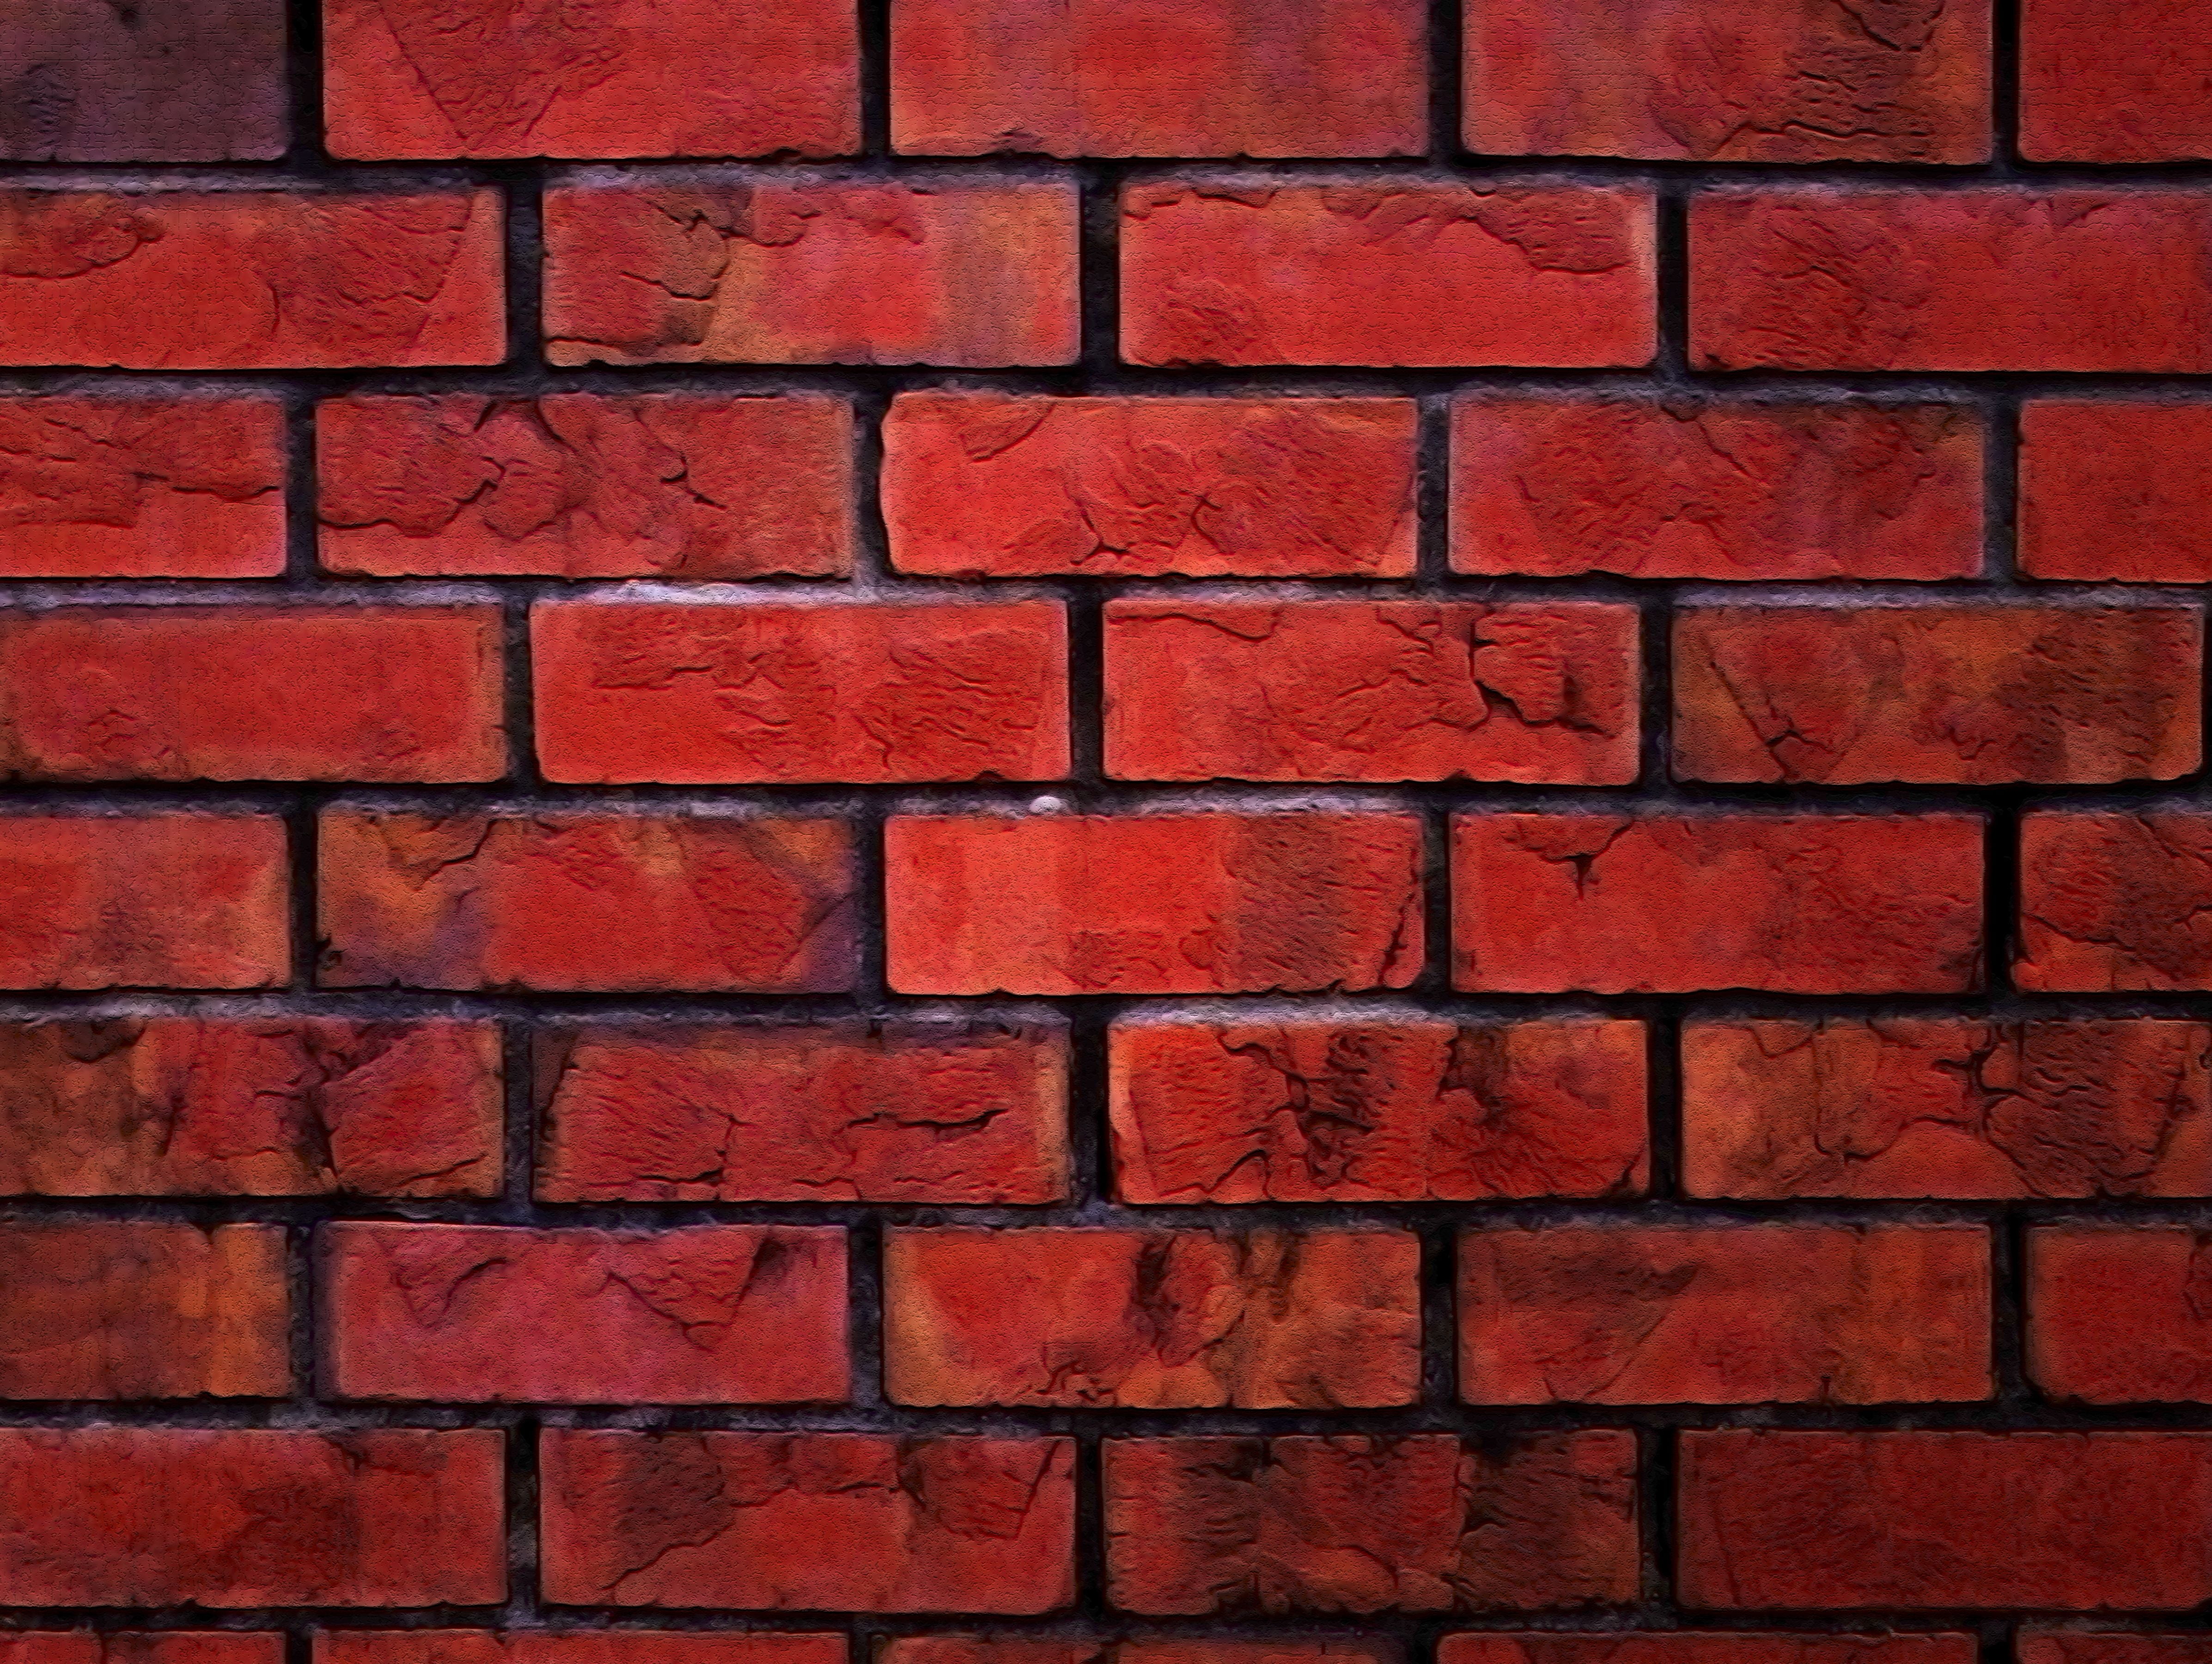 Nếu bạn đang tìm kiếm một hình nền độc đáo, thì hình nền bức tường gạch đỏ là lựa chọn tuyệt vời. Với những chi tiết sắc nét và độ tương phản cao, bạn sẽ đắm chìm trong không gian sống đầy màu sắc.